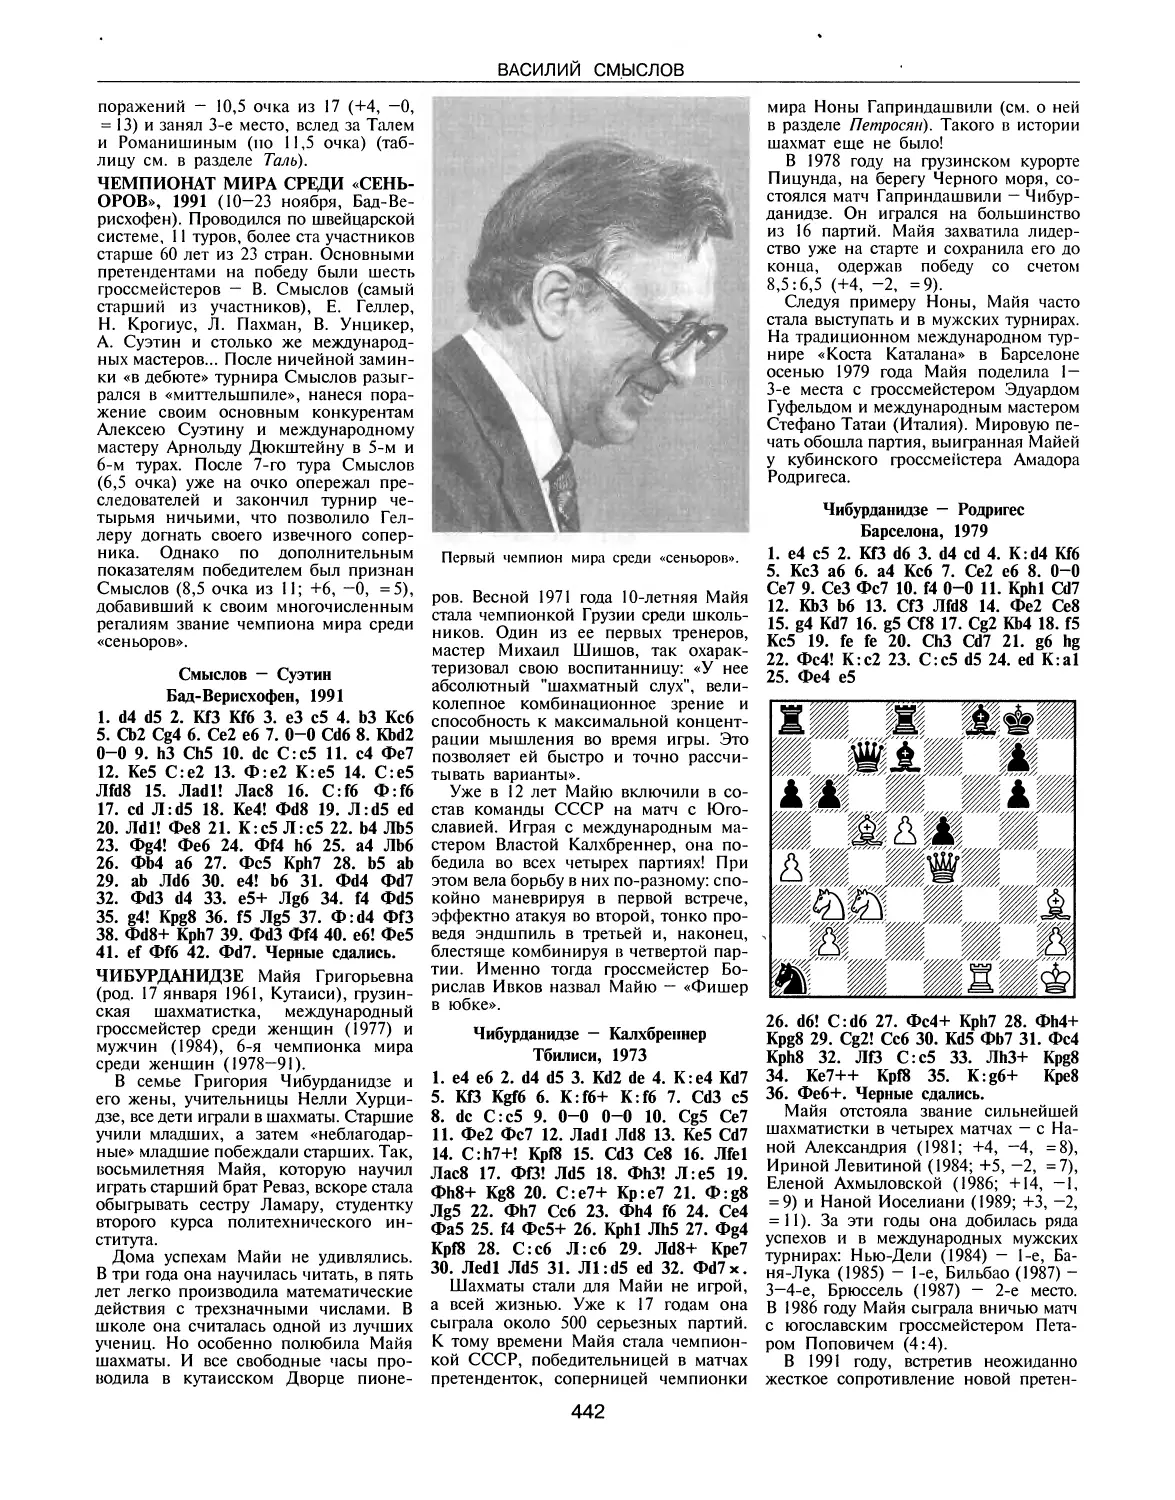 Чемпионат мира среди «сеньоров», 1991
Чибурданидзе М.